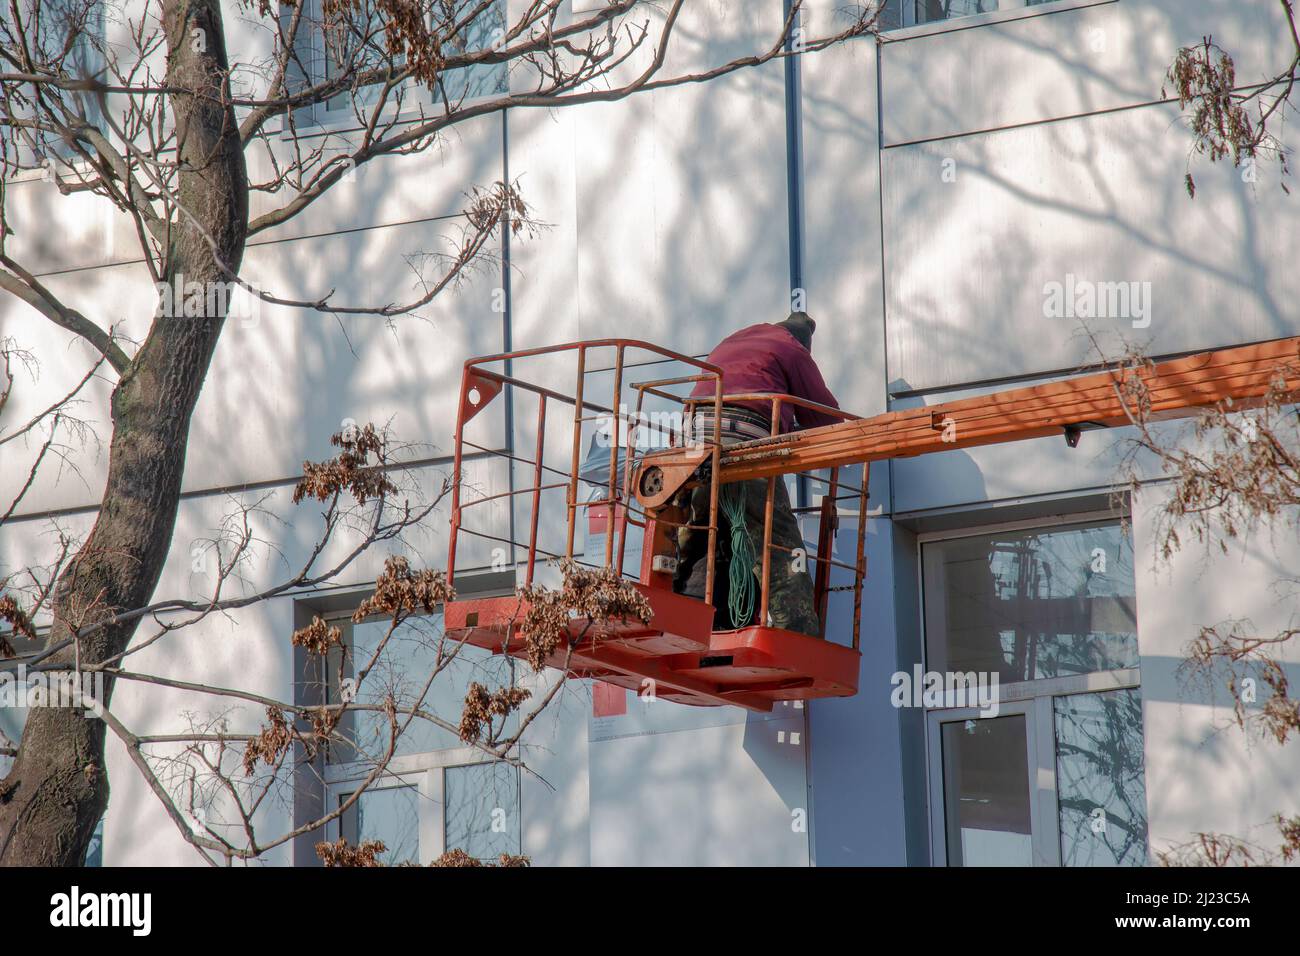 Der Bauherr in einem Krankorb repariert die Beschichtung einer Metallstruktur an der Wand der Fassade eines Gebäudes. Stockfoto